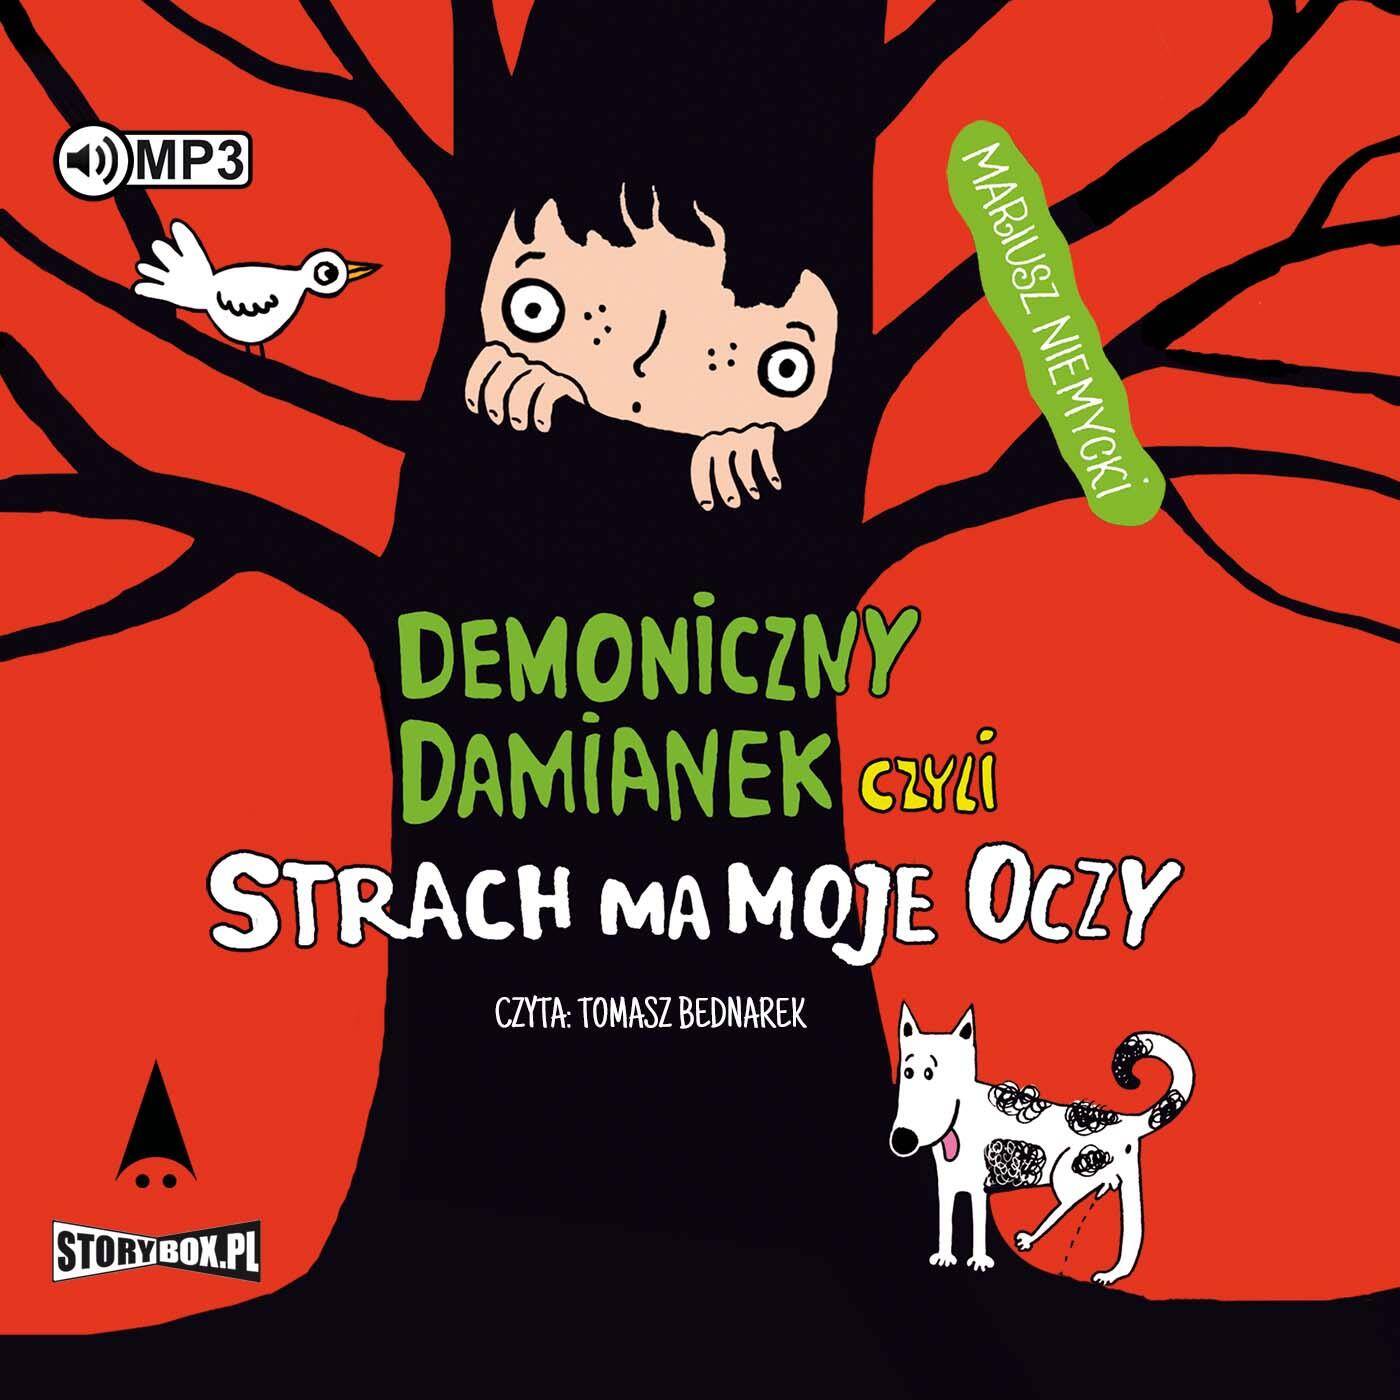 CD MP3 Demoniczny Damianek czyli strach ma moje oczy